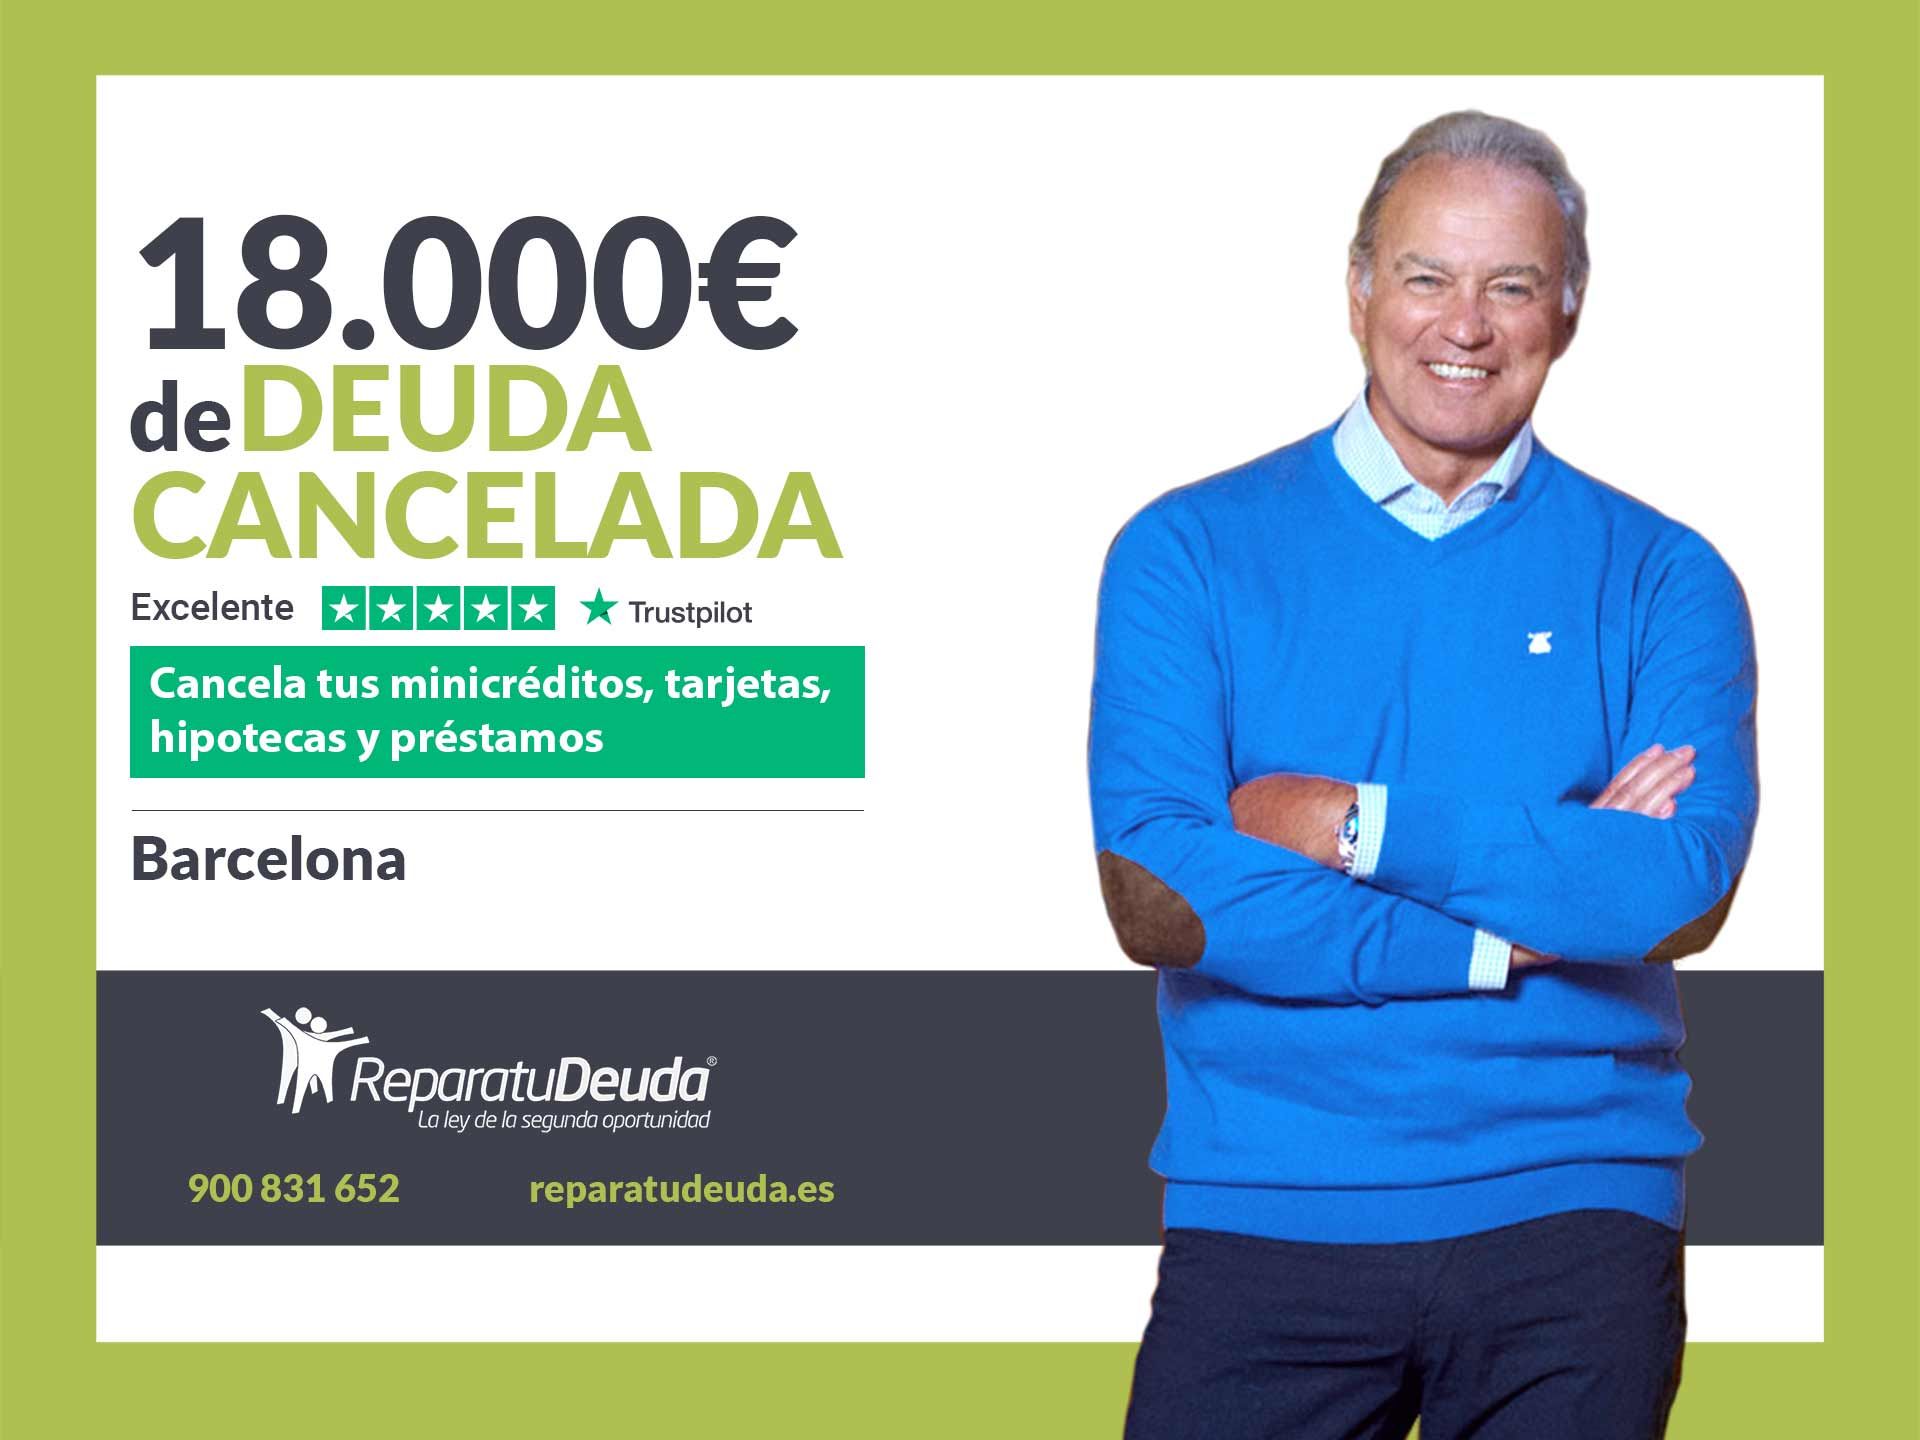 Repara tu Deuda Abogados cancela 18.000? en Barcelona (Catalunya) con la Ley de Segunda Oportunidad